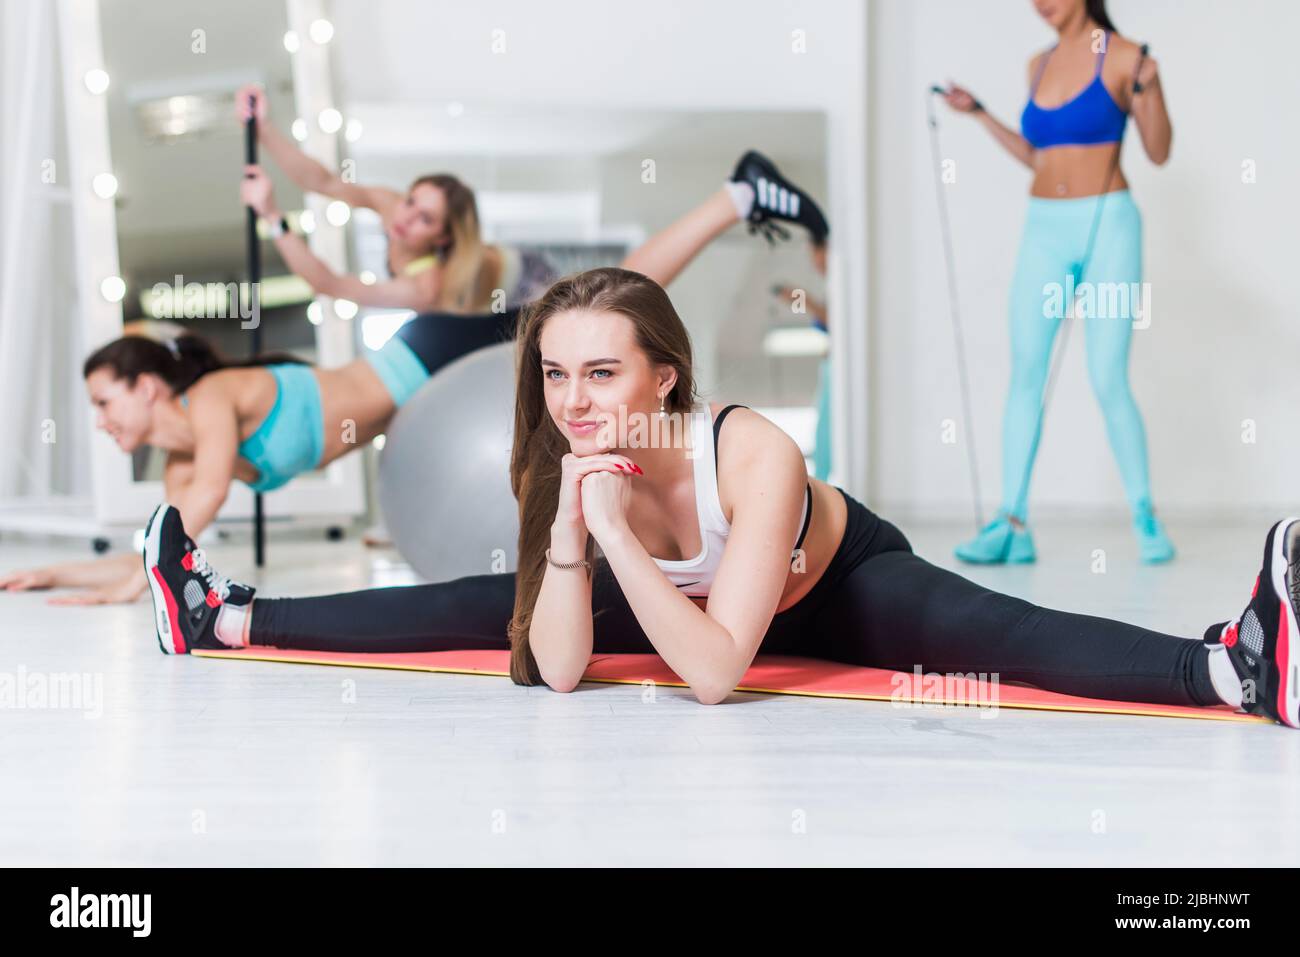 Sportliche Frauen, die im Fitnessstudio verschiedene Fitnessübungen machen Mädchen, die im mittleren Spalt sitzen und ihre inneren Oberschenkel auf dem Boden im Sportverein strecken. Stockfoto